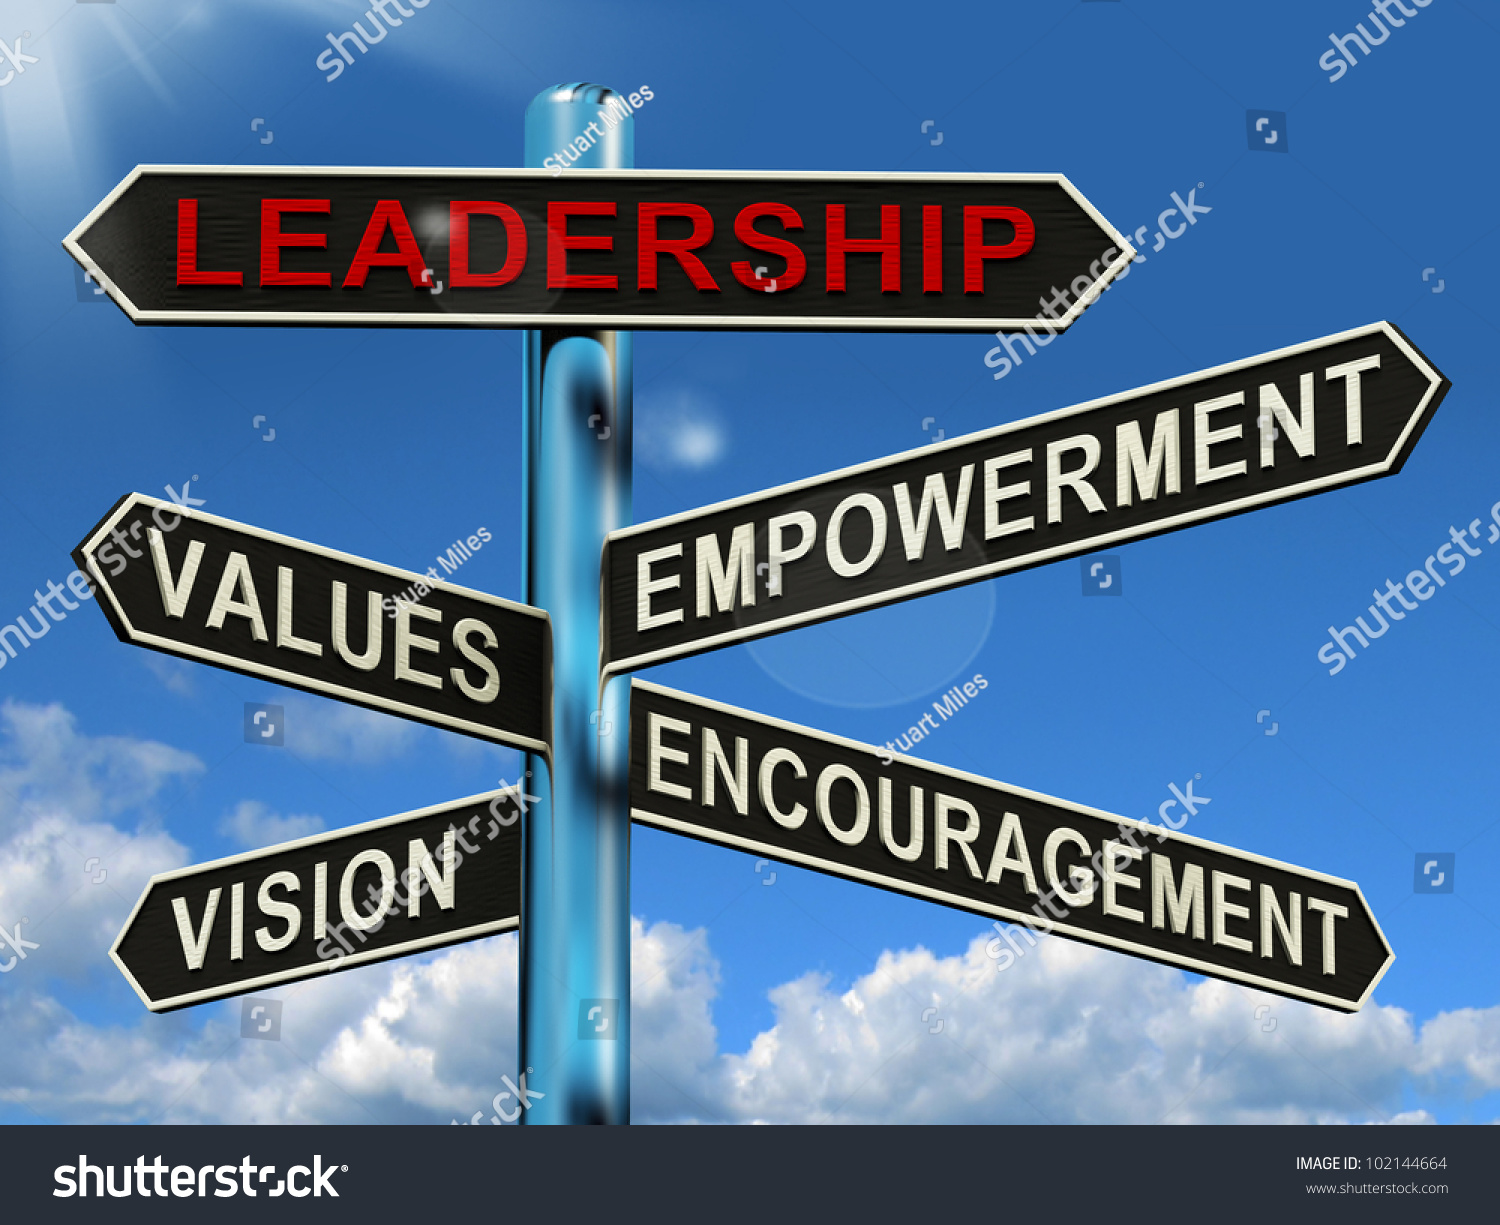 Visionary Leadership Vision And Values